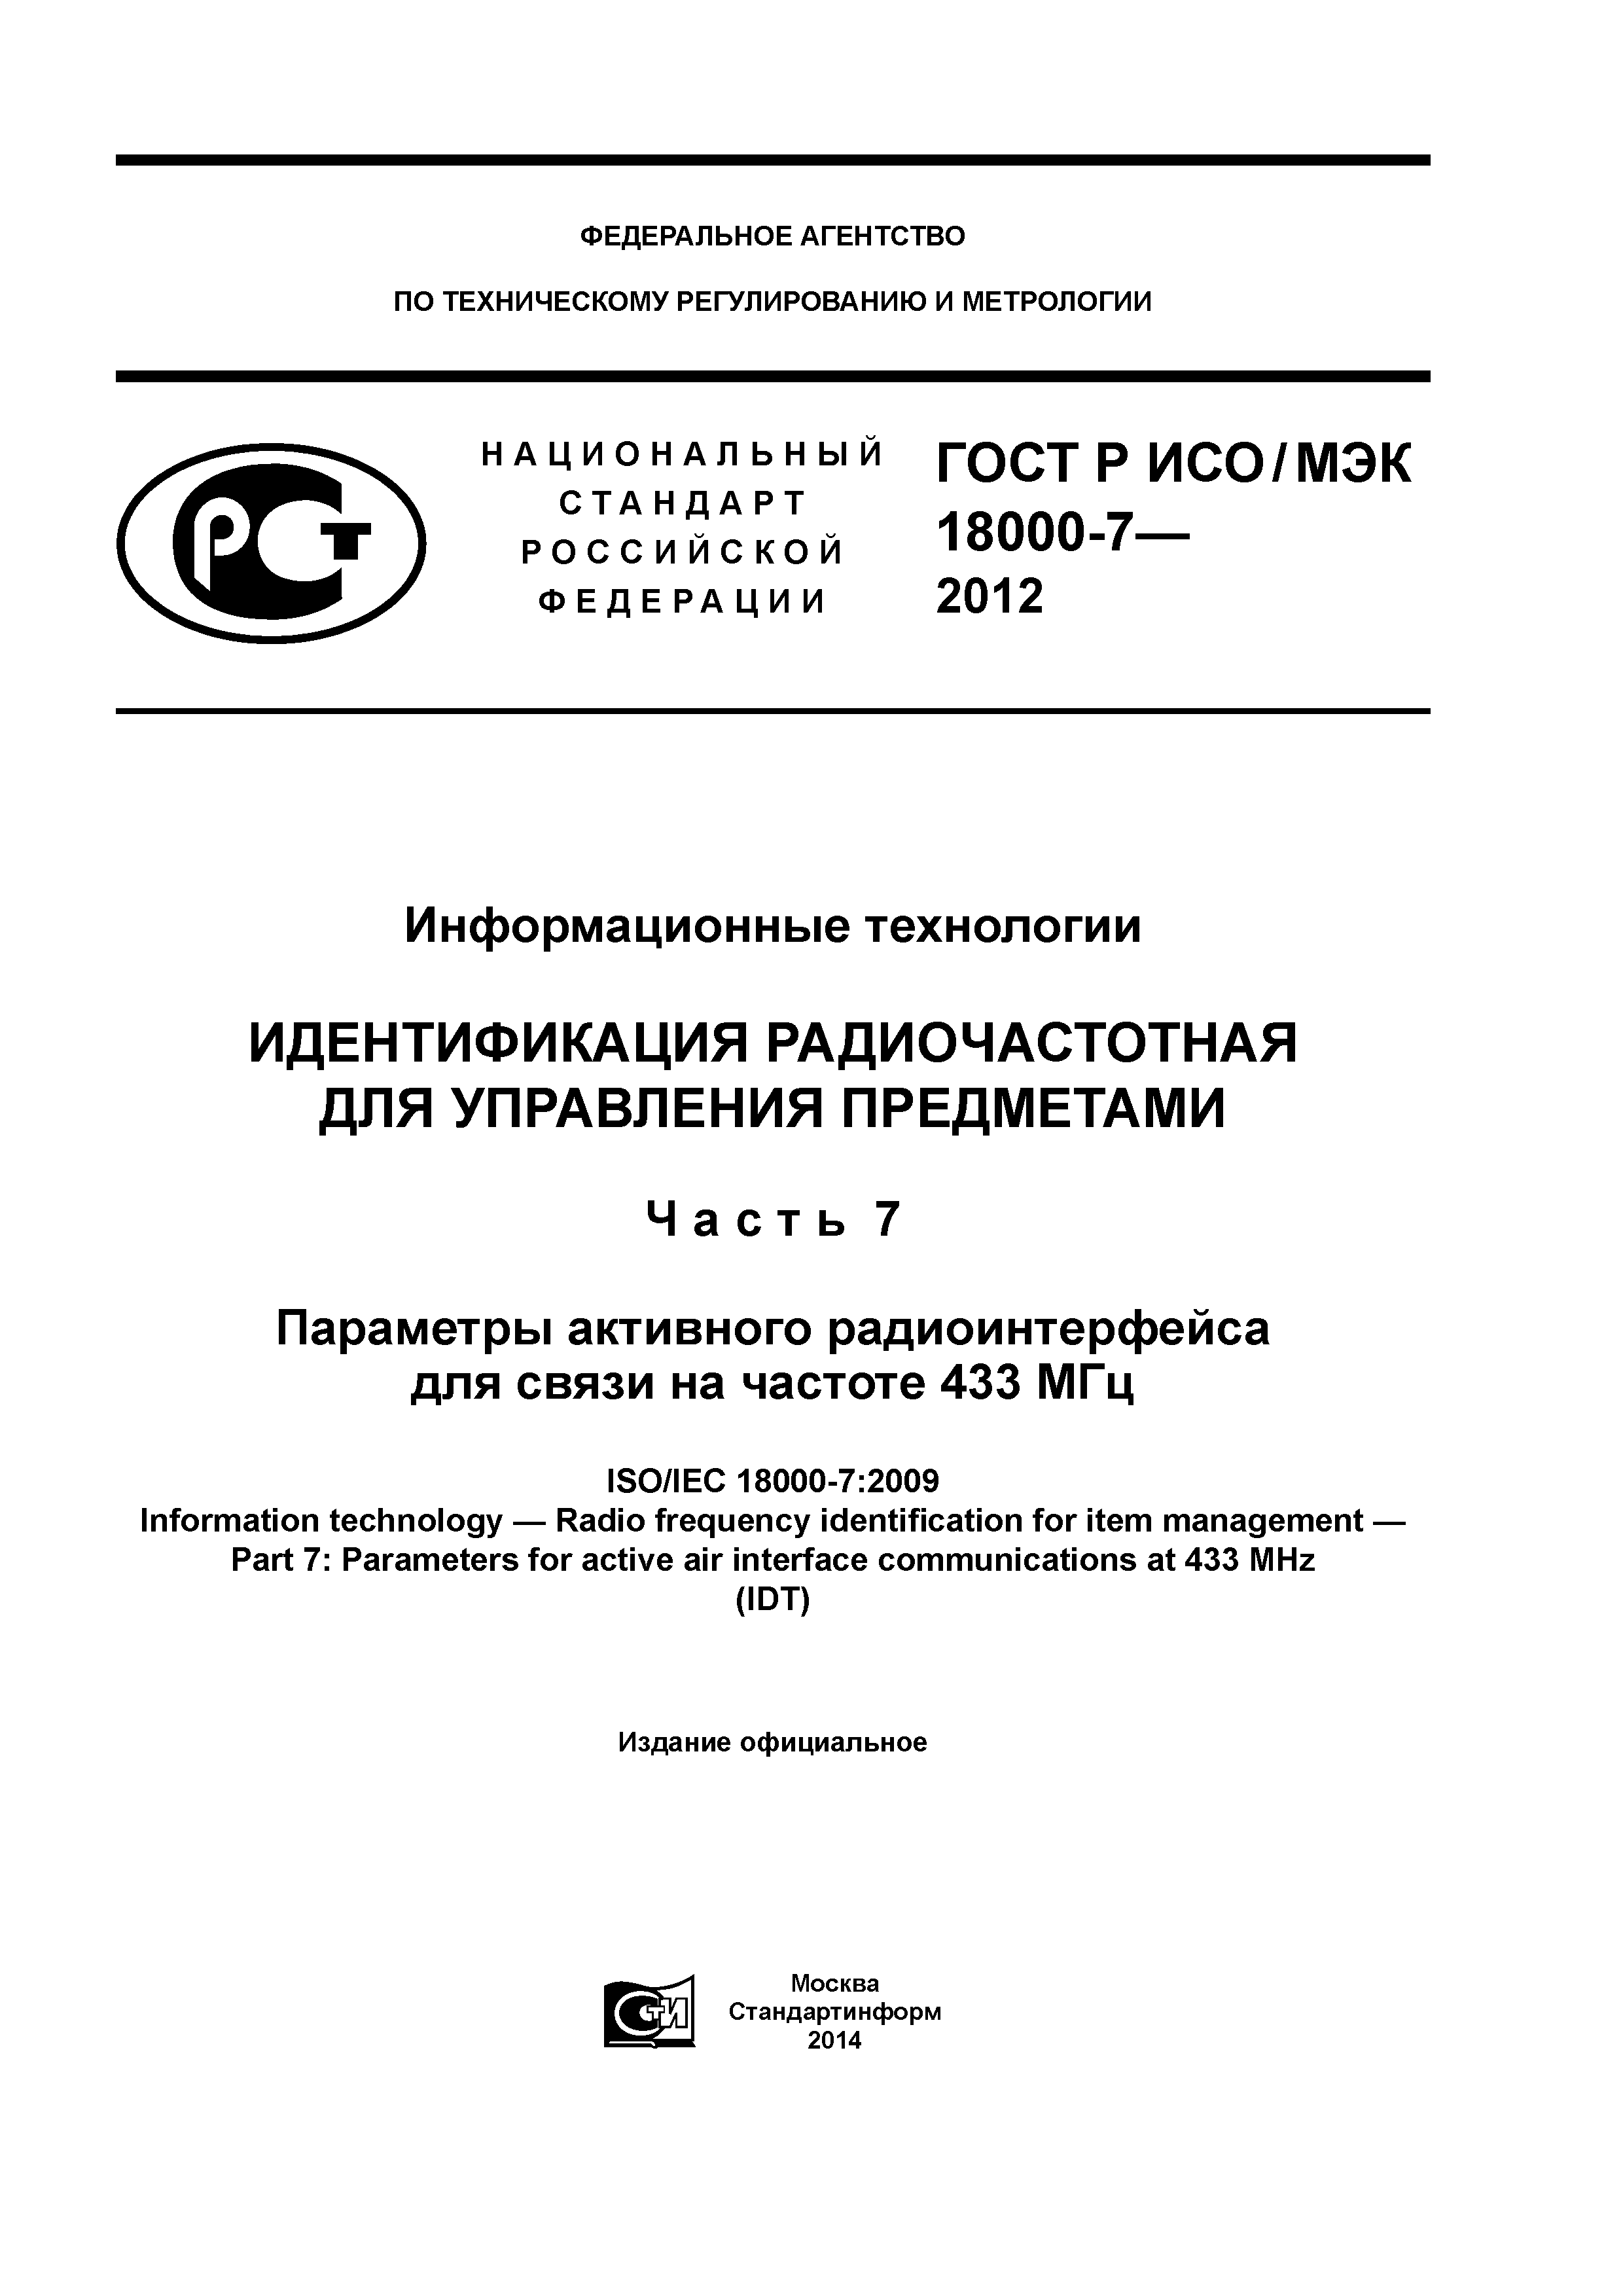 ГОСТ Р ИСО/МЭК 18000-7-2012